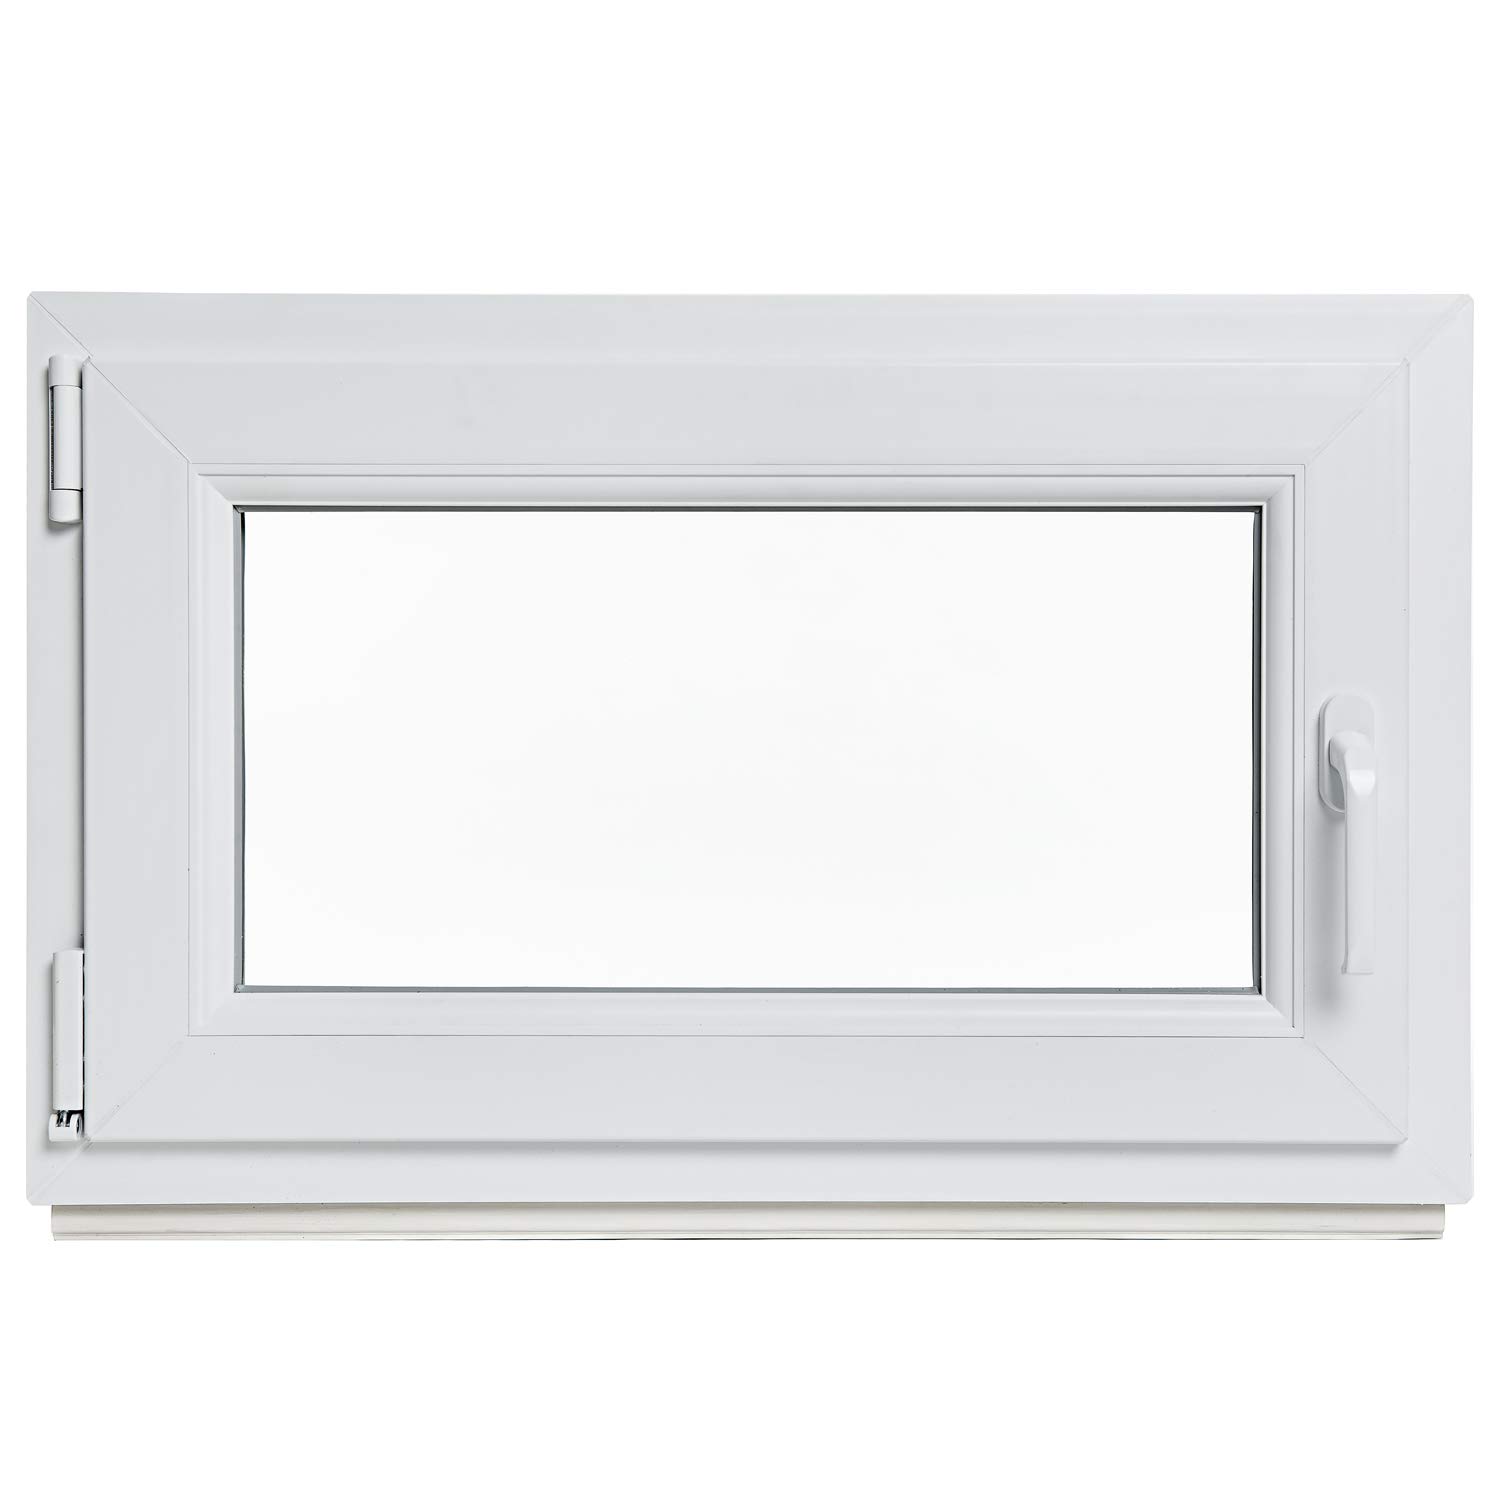 Kellerfenster - Kunststoff - Fenster - weiß - BxH: 95 x 55 cm - DIN links - 2-fach-Verglasung - Lagerware